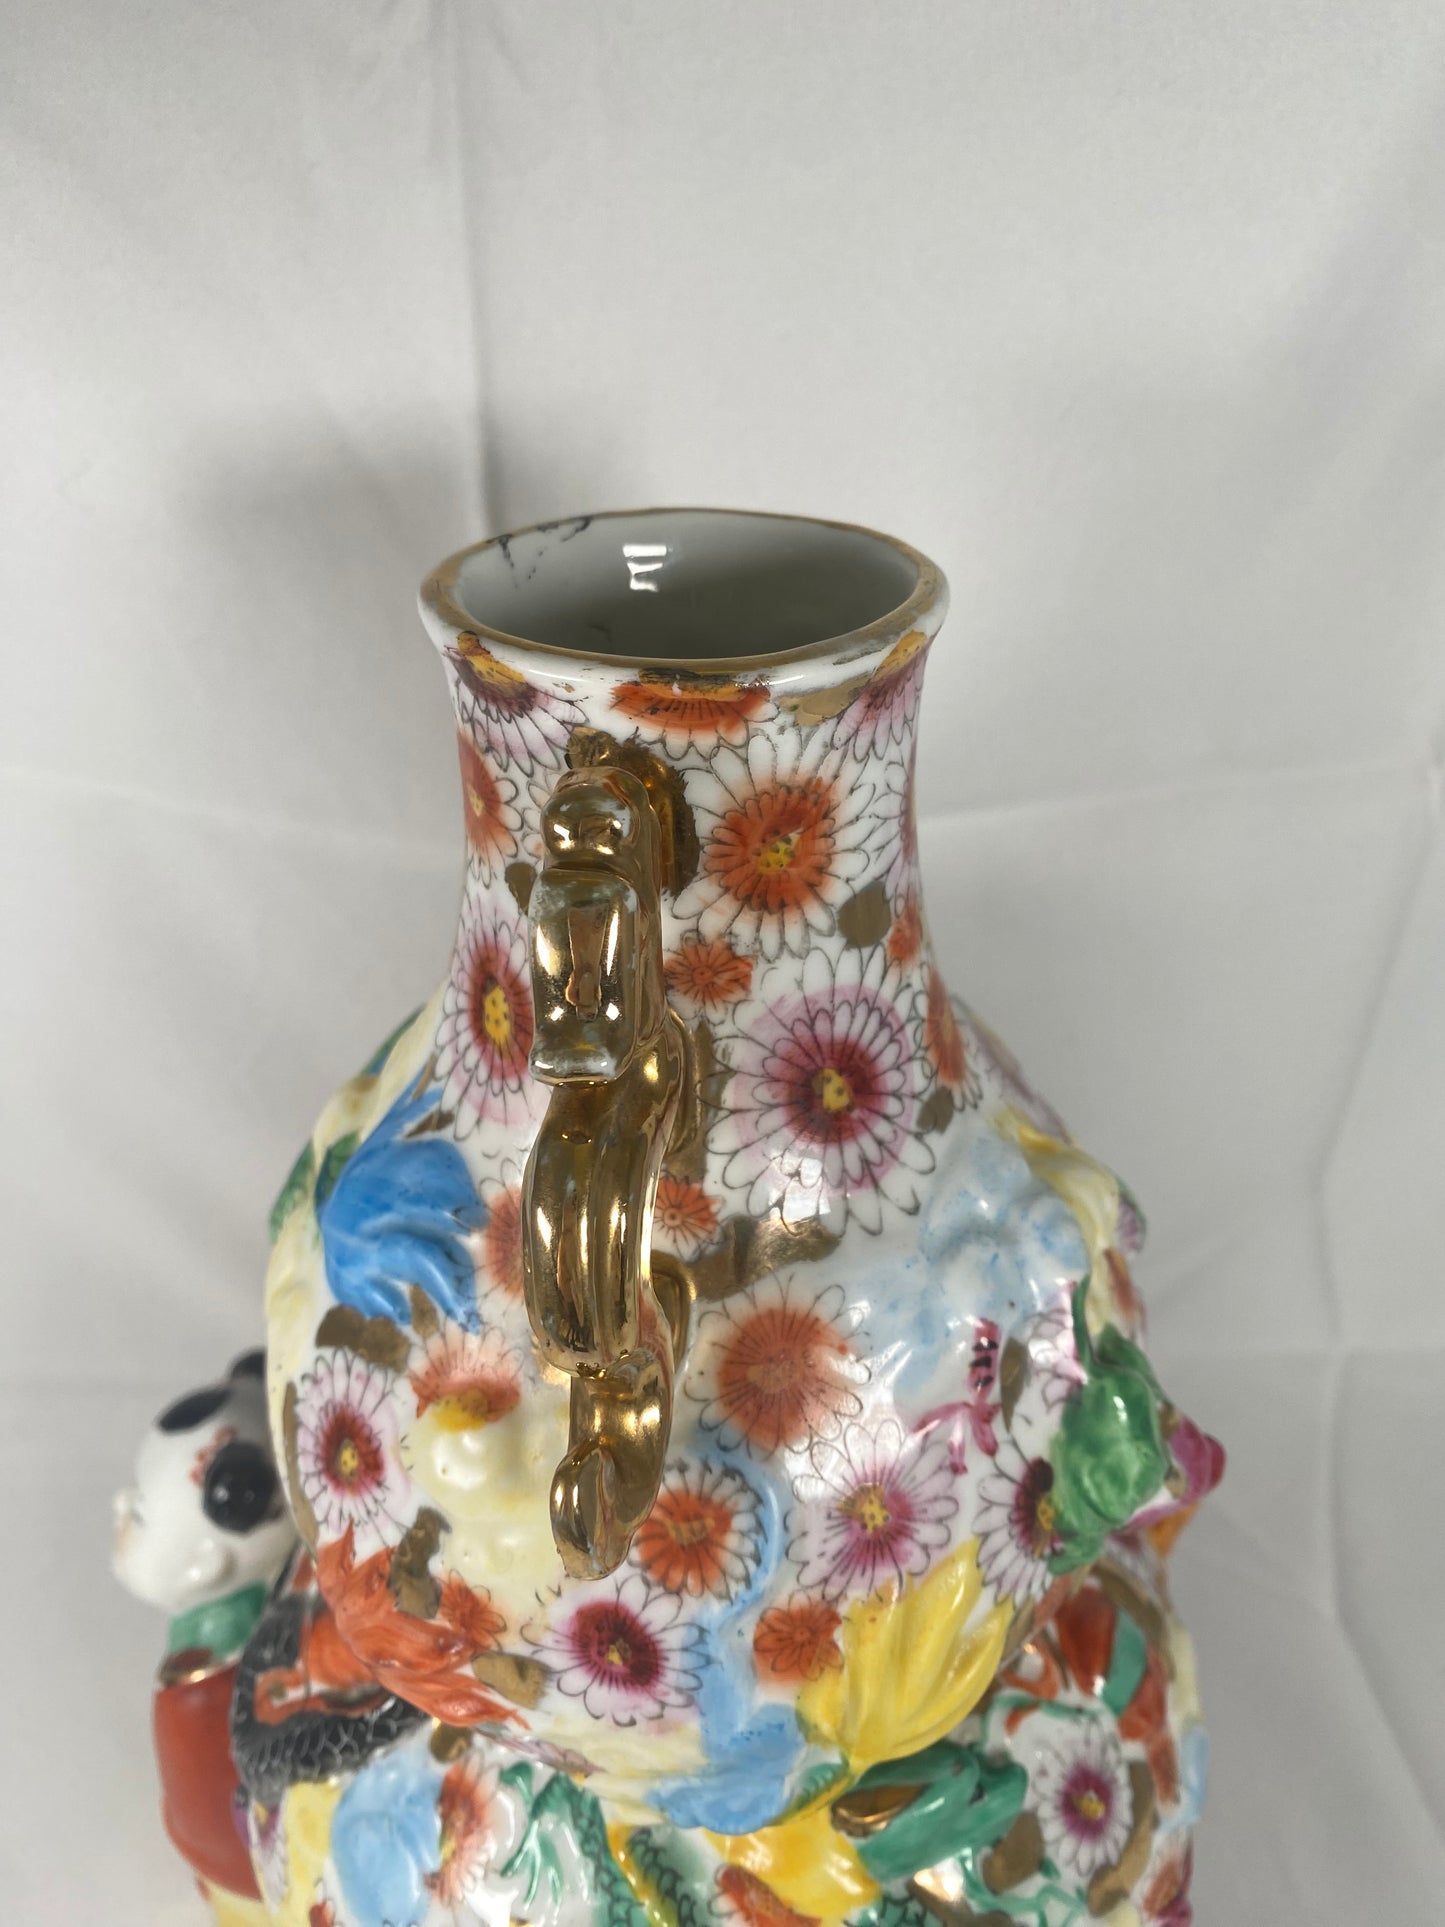 中世纪粉彩“嬉戏儿童”人物造型中国花瓶